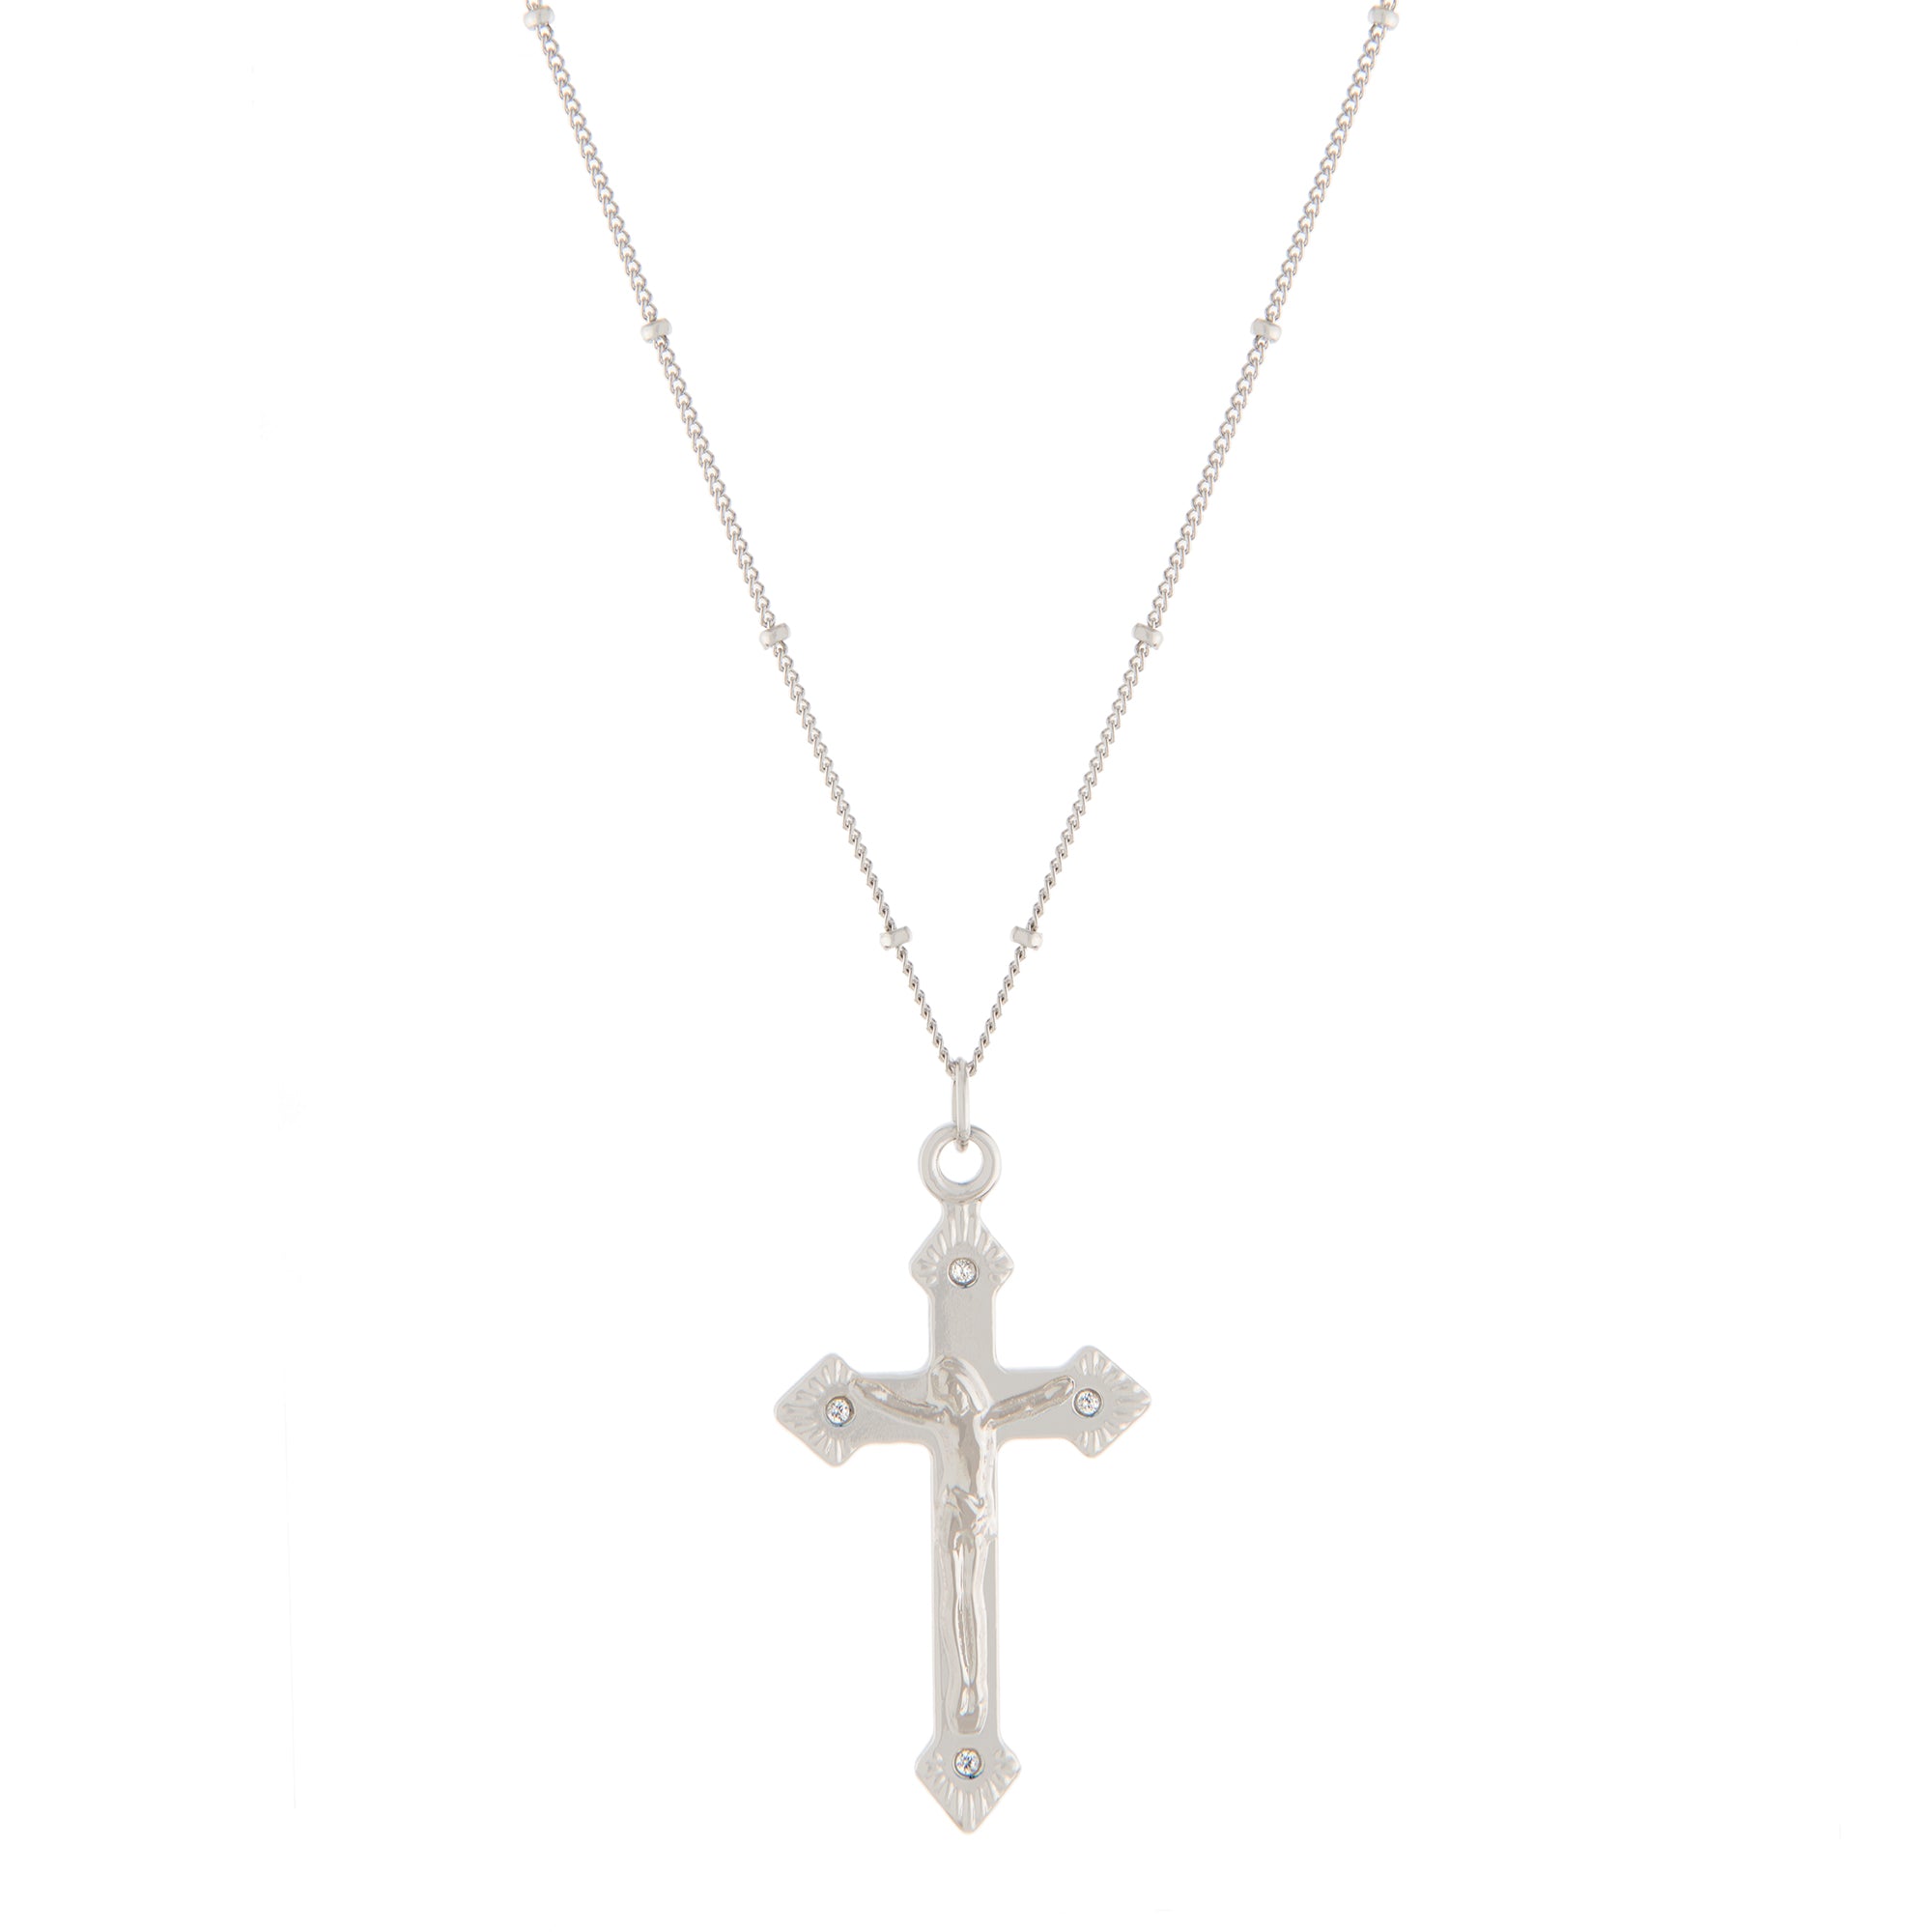 Zaya Cross Necklace